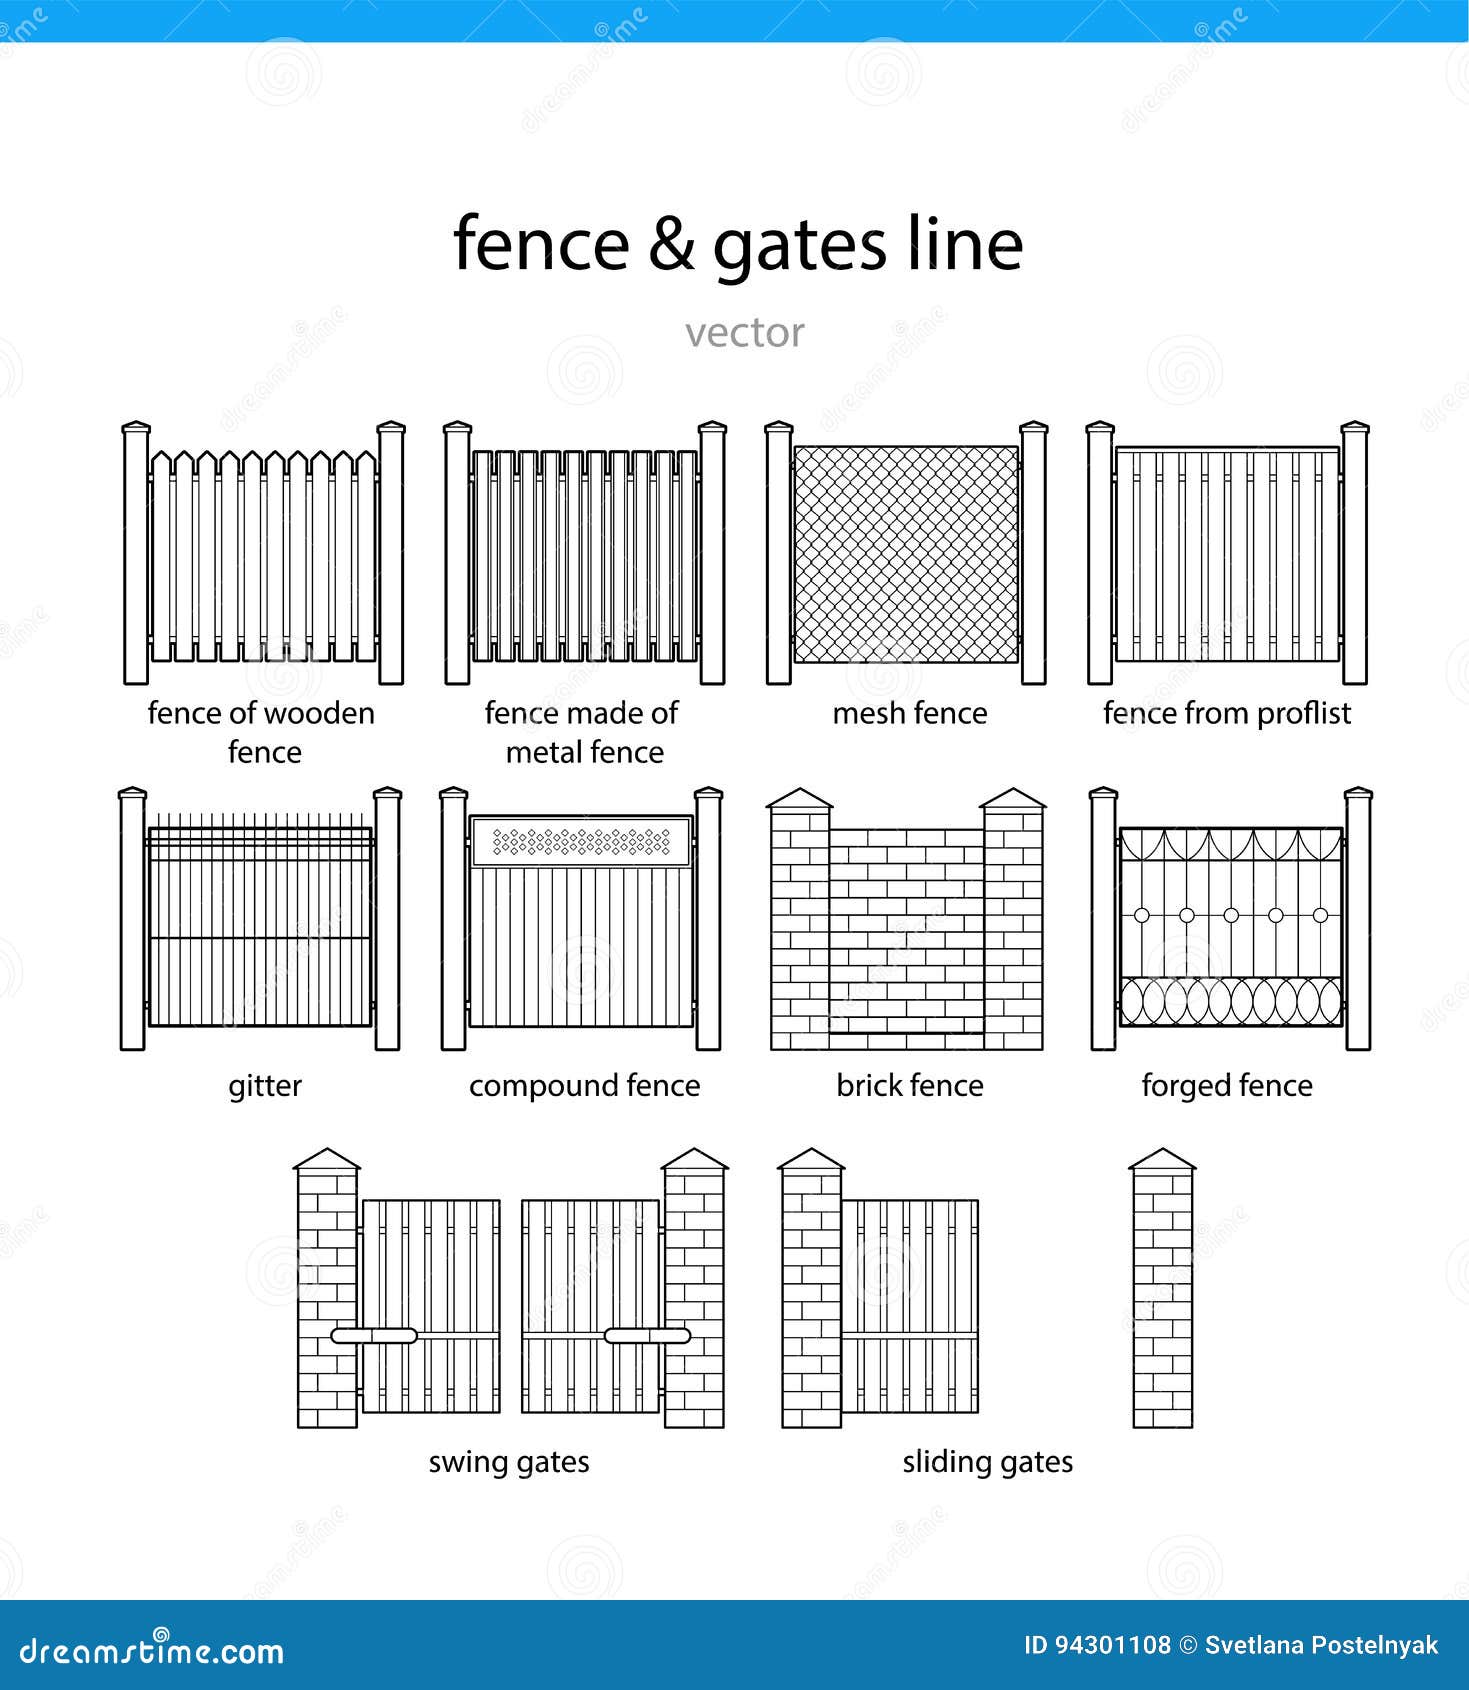 Fence Company Near Me Killeen Tx